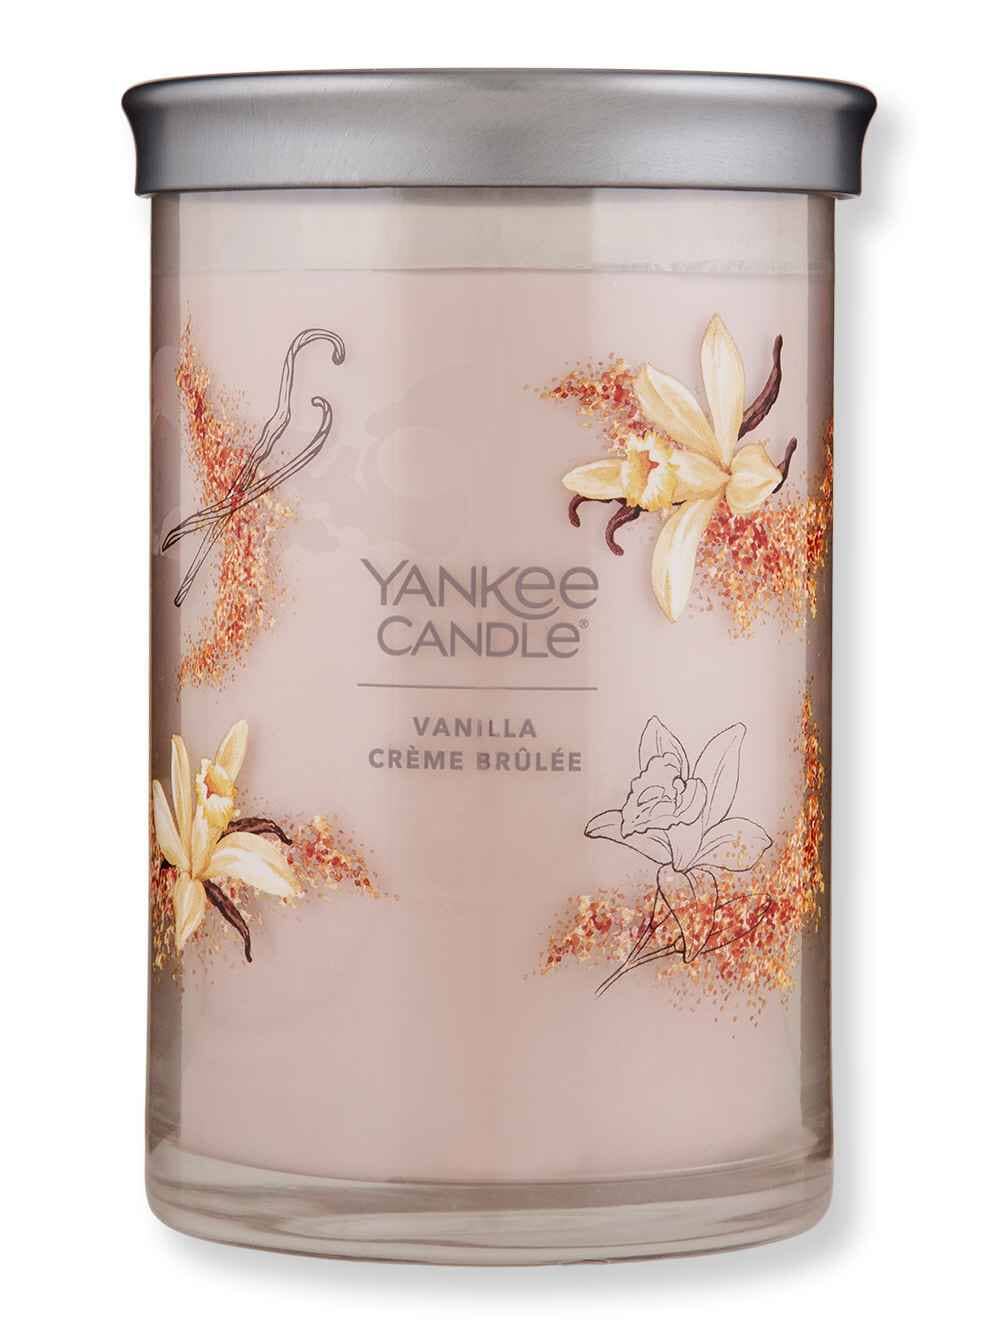 Vanilla Crème Brûlée Signature Large Jar Candle - Signature Large